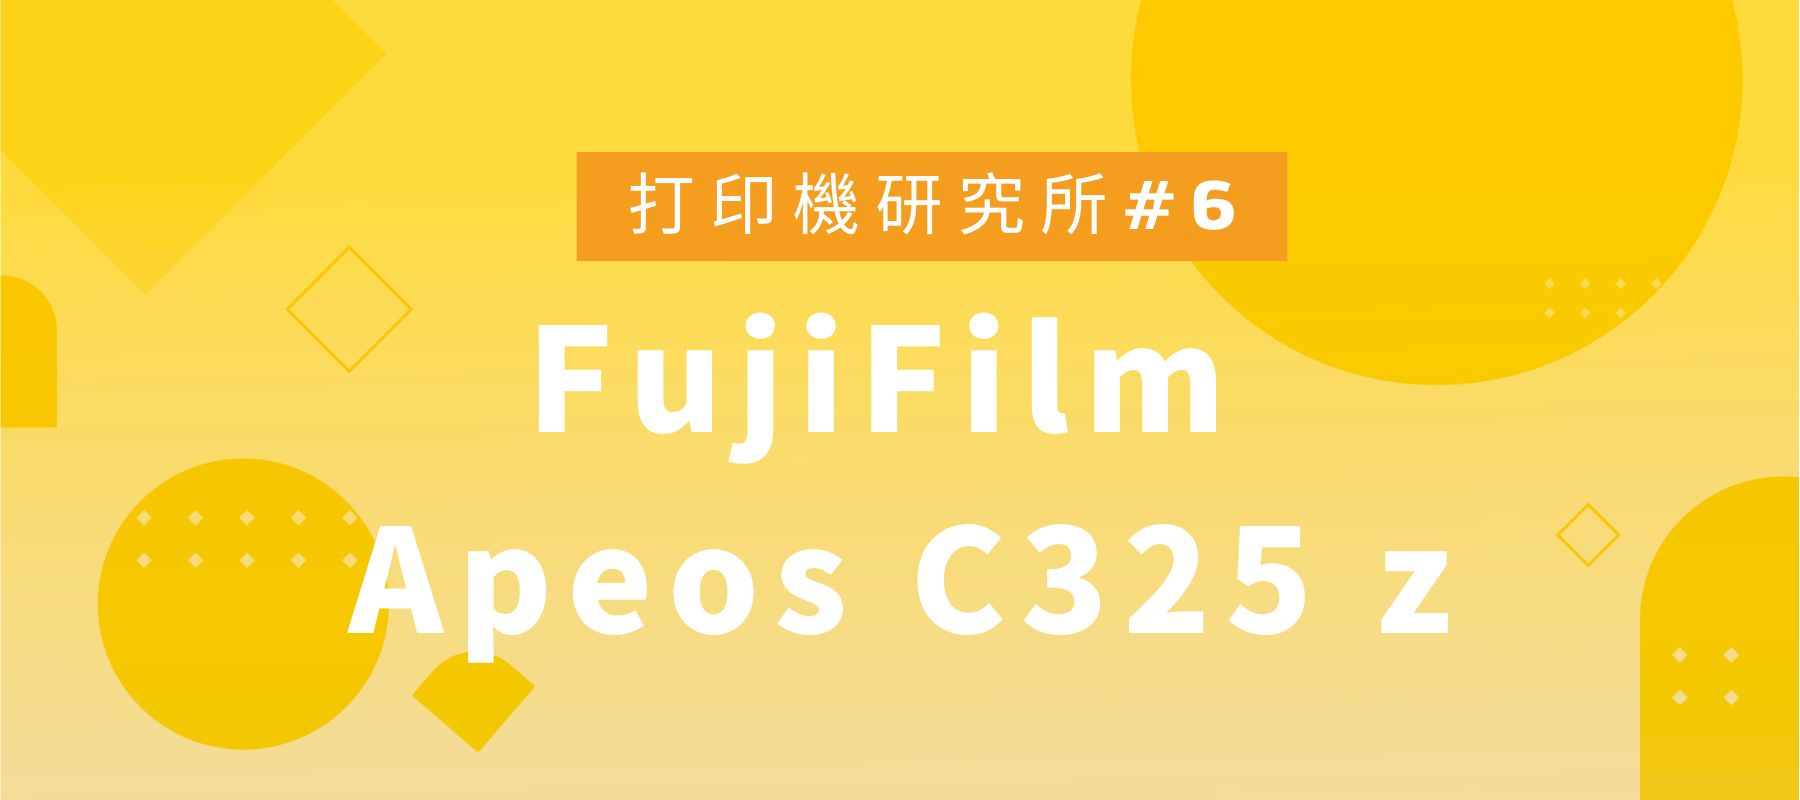 如何選擇最適合的打印機? FujiFilm Apeos C325 z